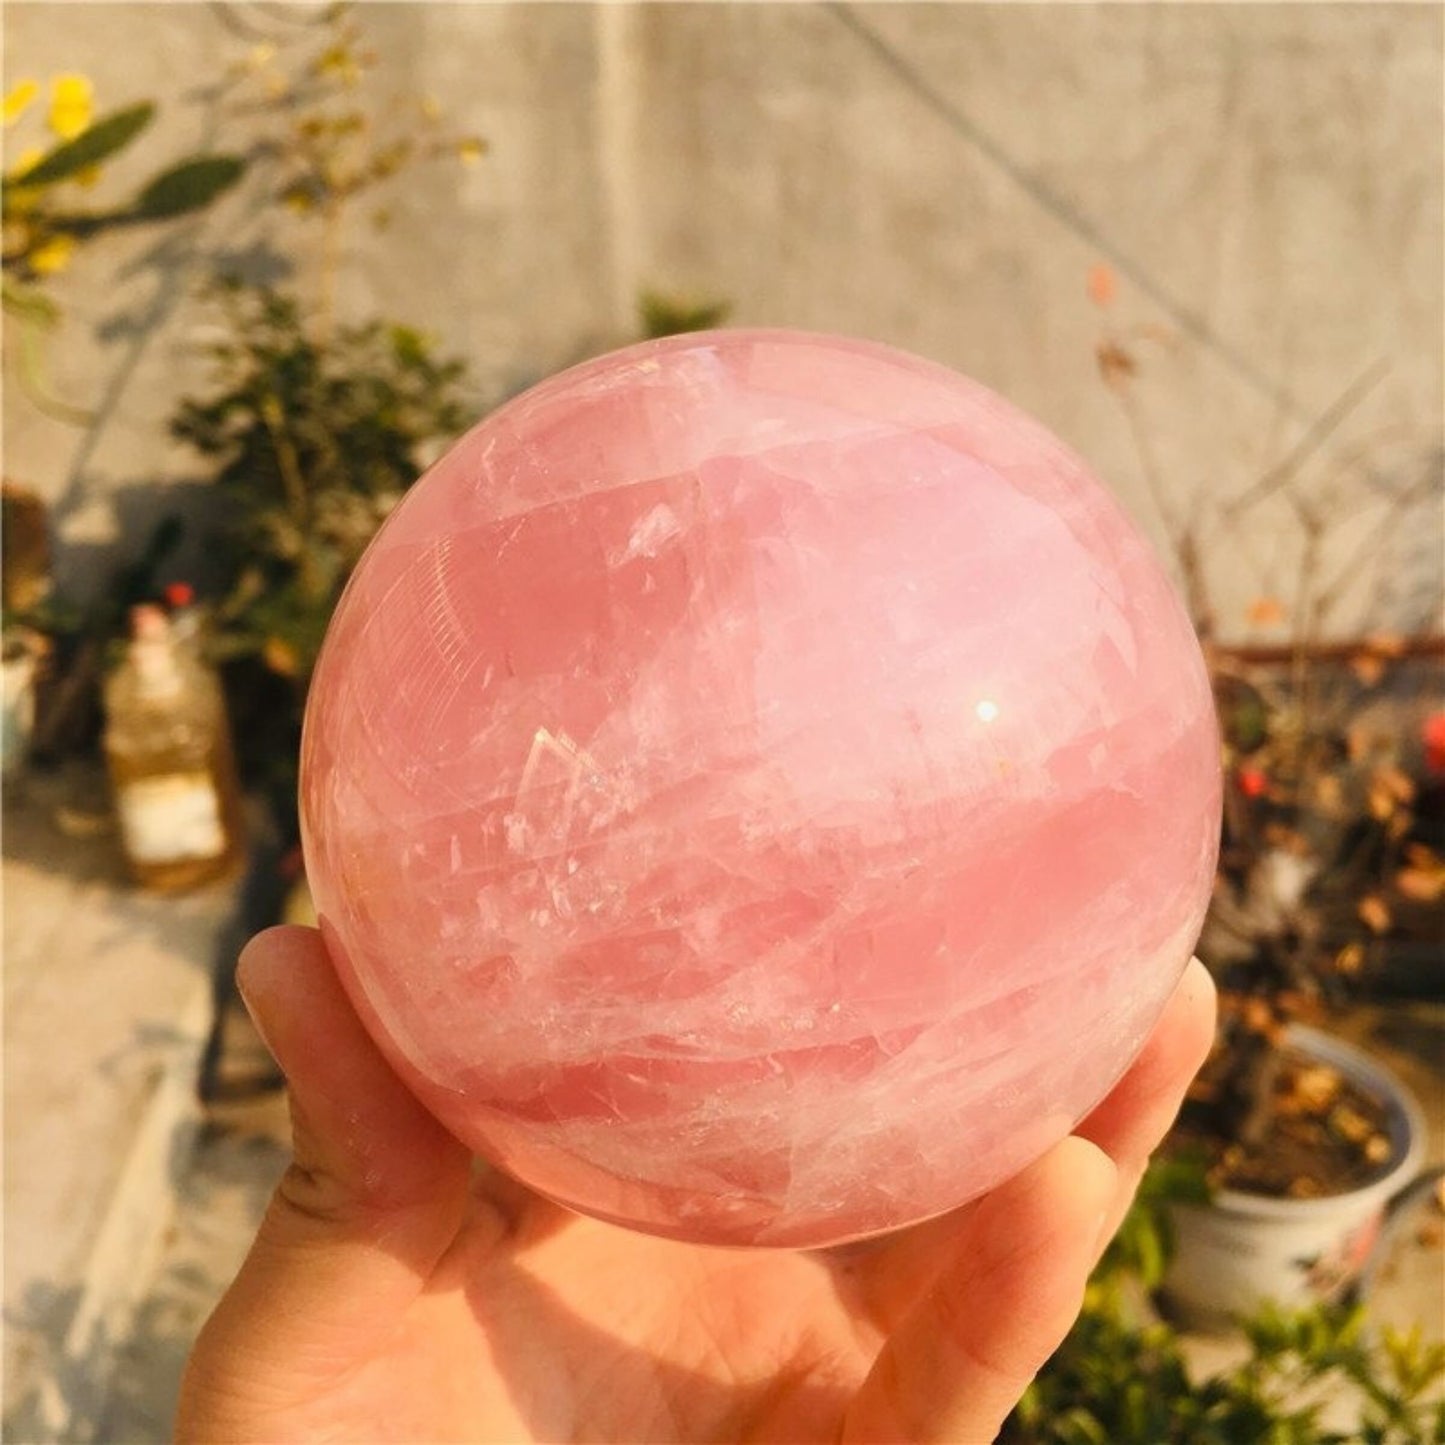 Natural Rose Quartz Crystal Ball Ornament Specimen